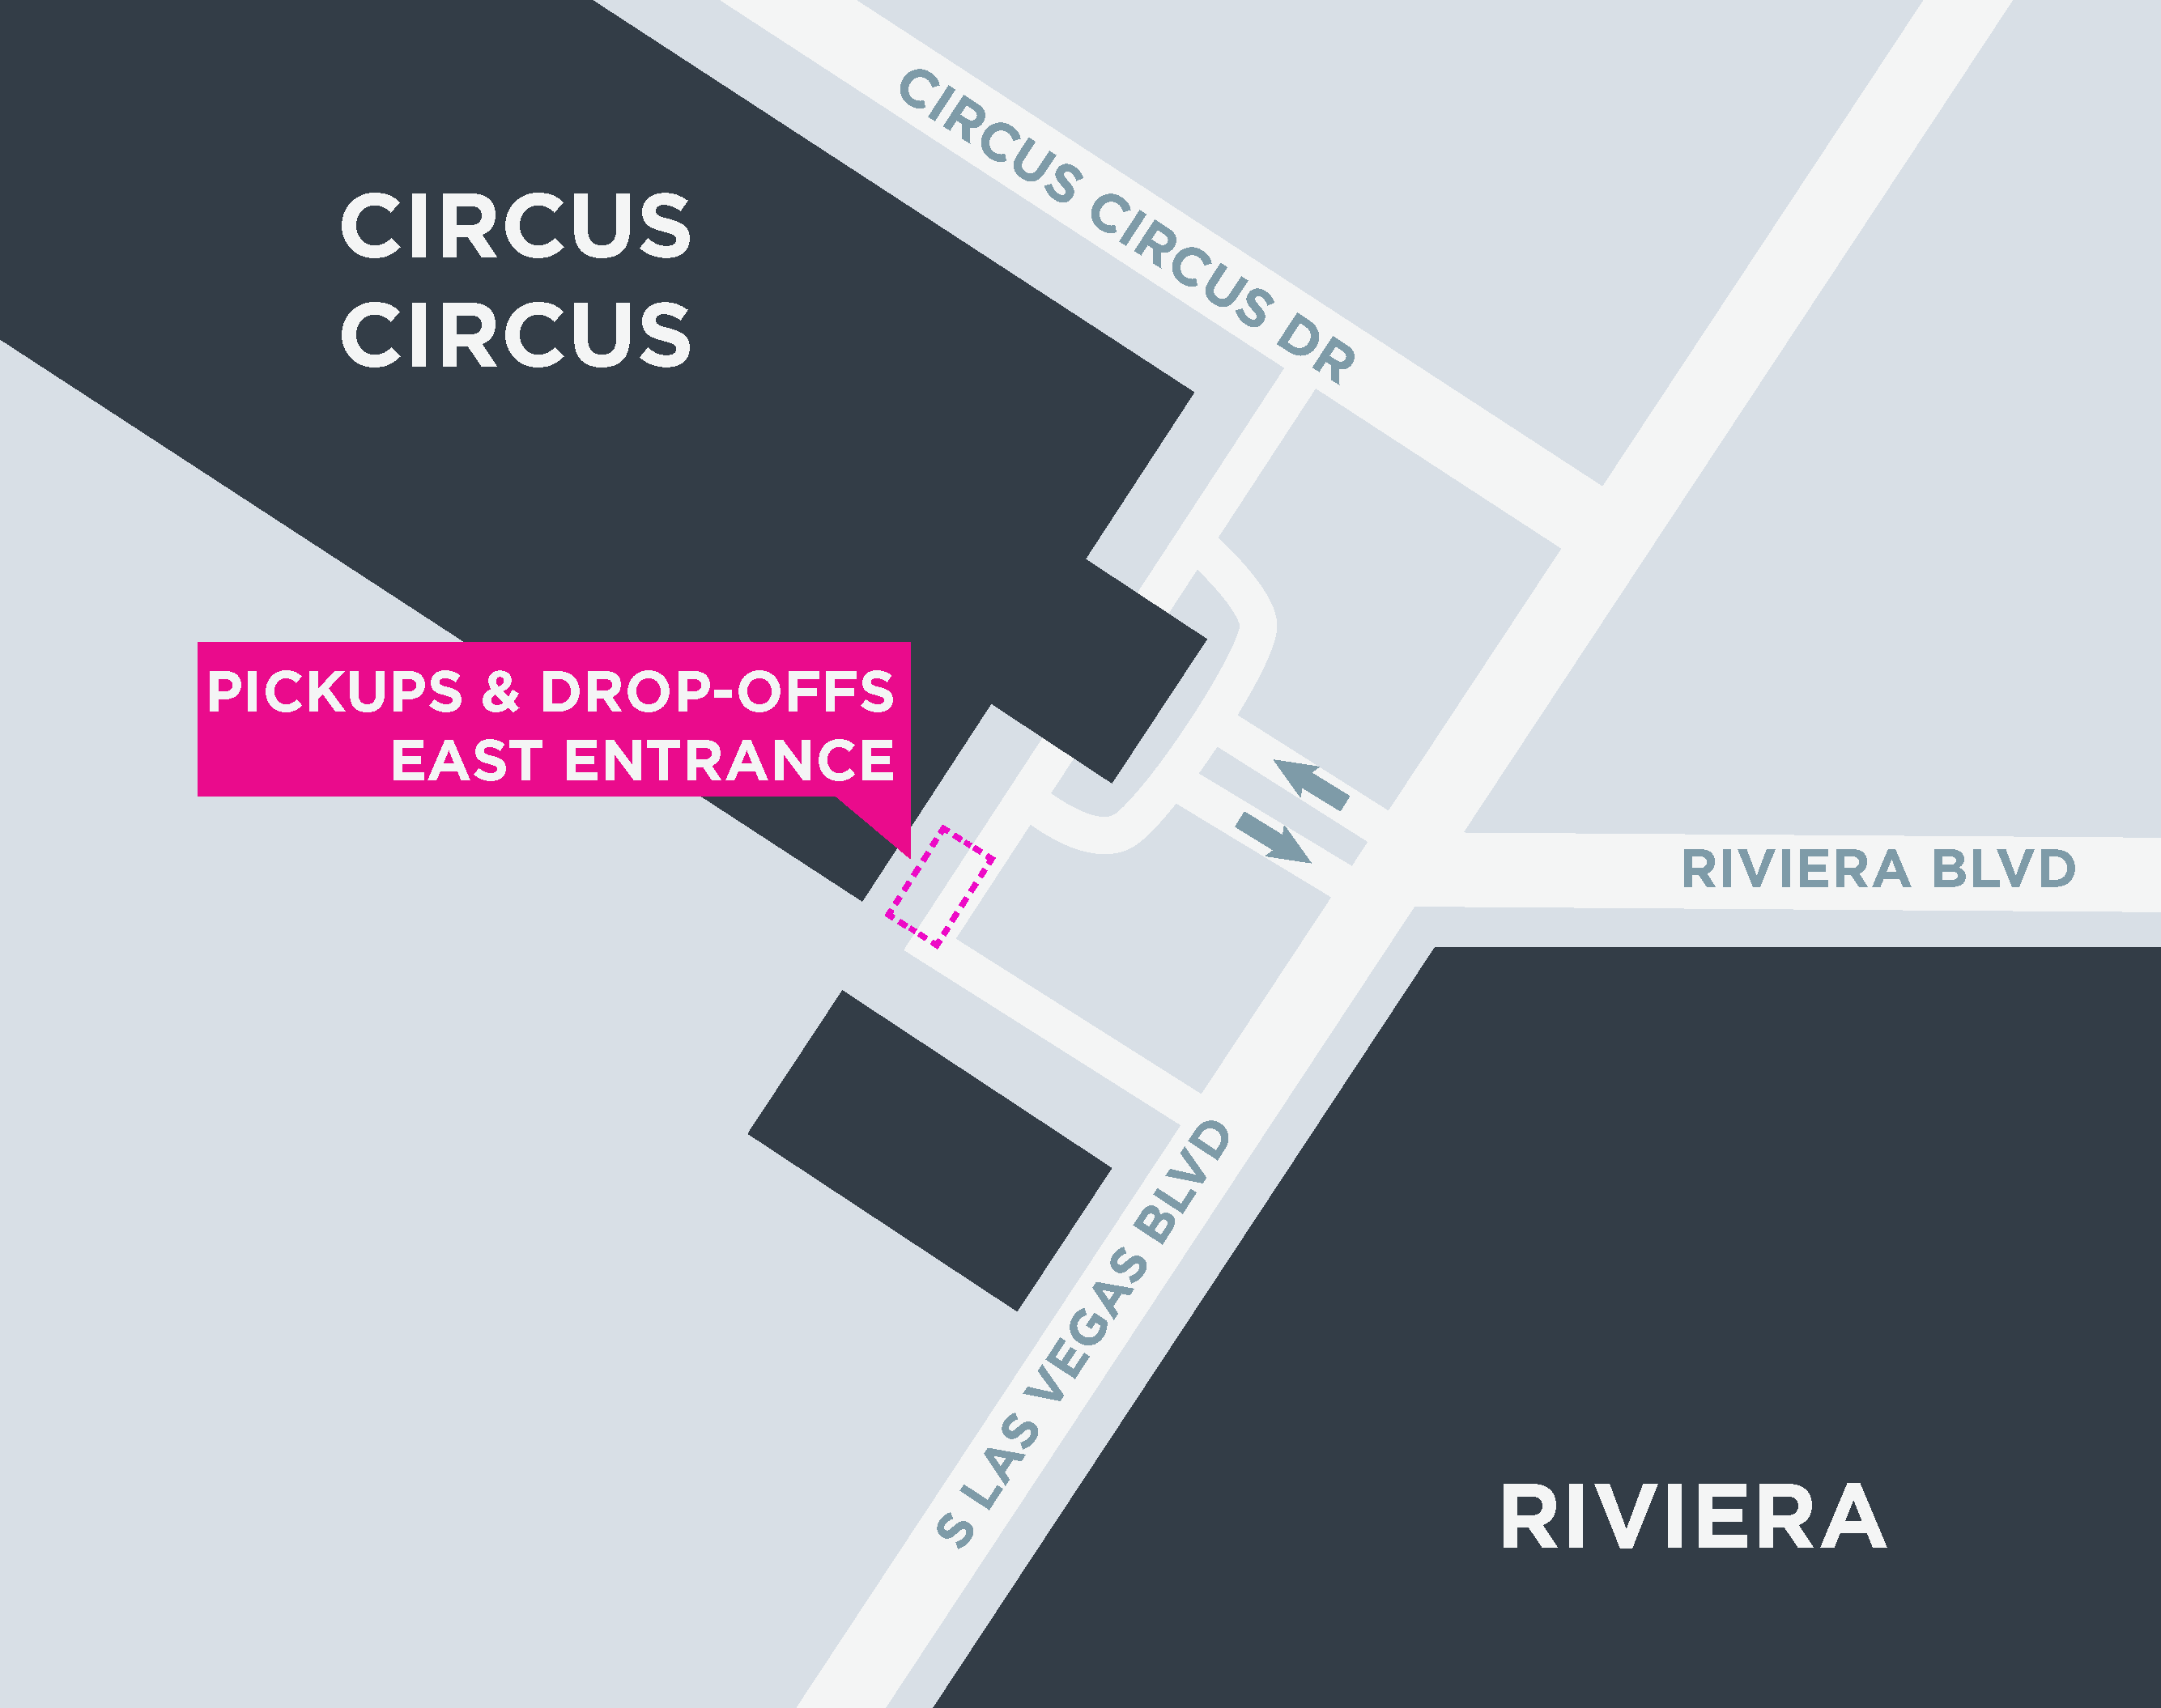 Esta imagen muestra un mapa de Circus Circus, incluidas las áreas para recoger y dejar pasajeros.